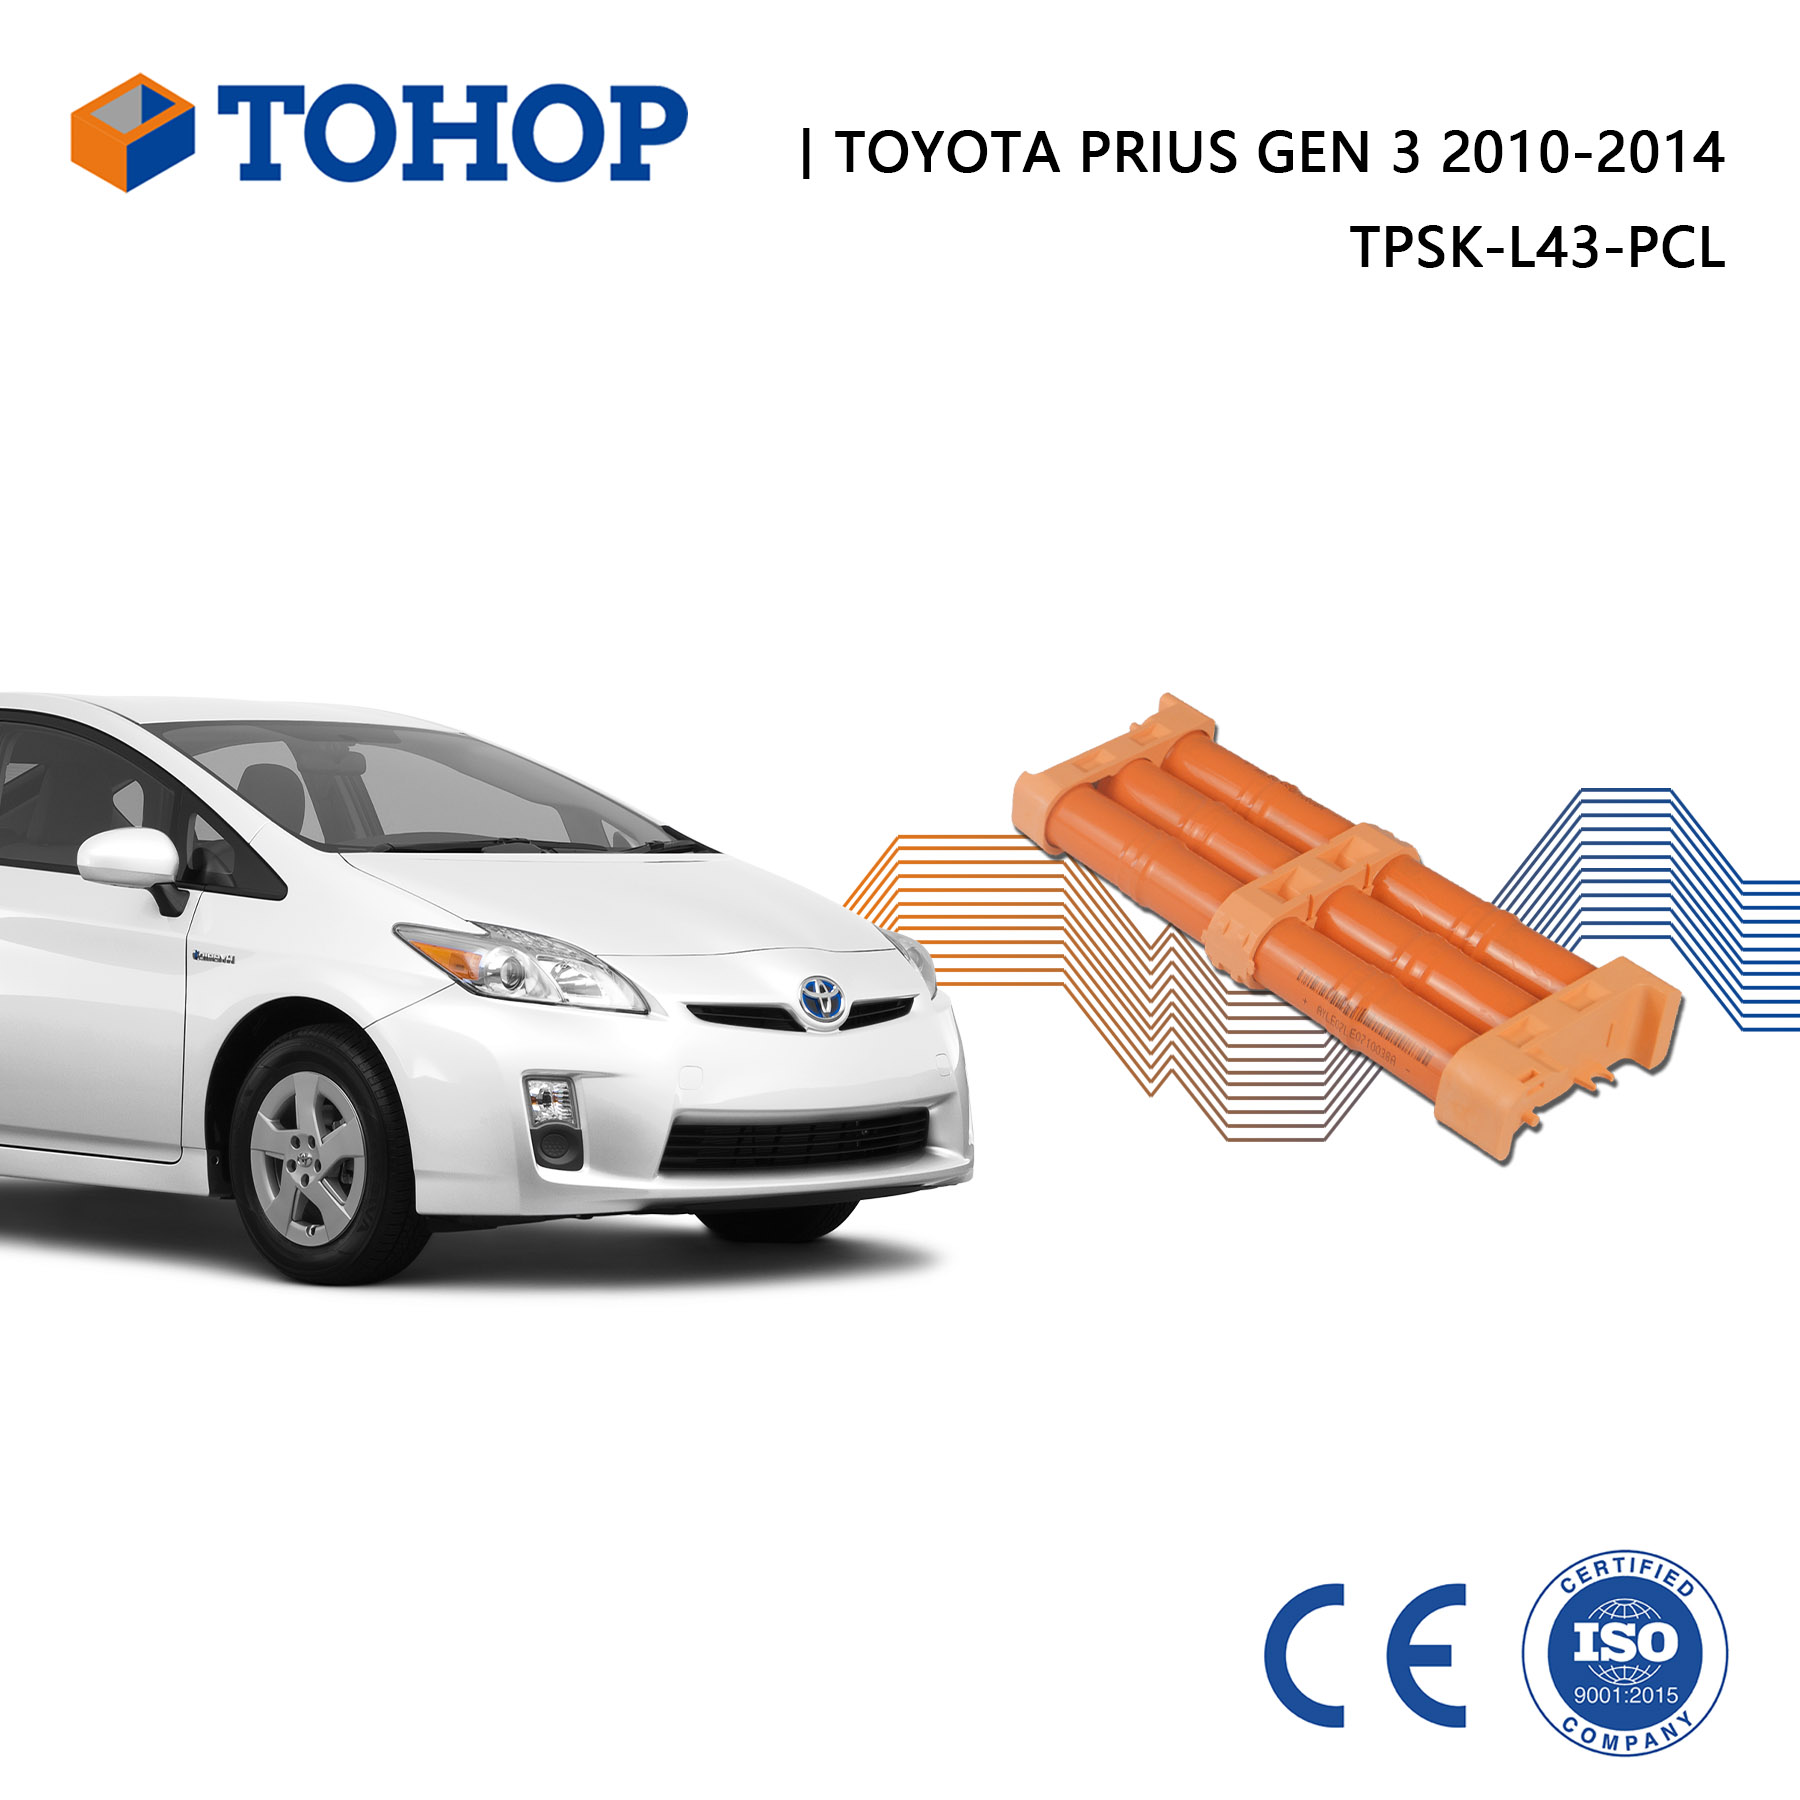 Reemplazo de batería híbrida de Prius Gen 3 Toyota 14.4V 6.5AH NIMH Cell